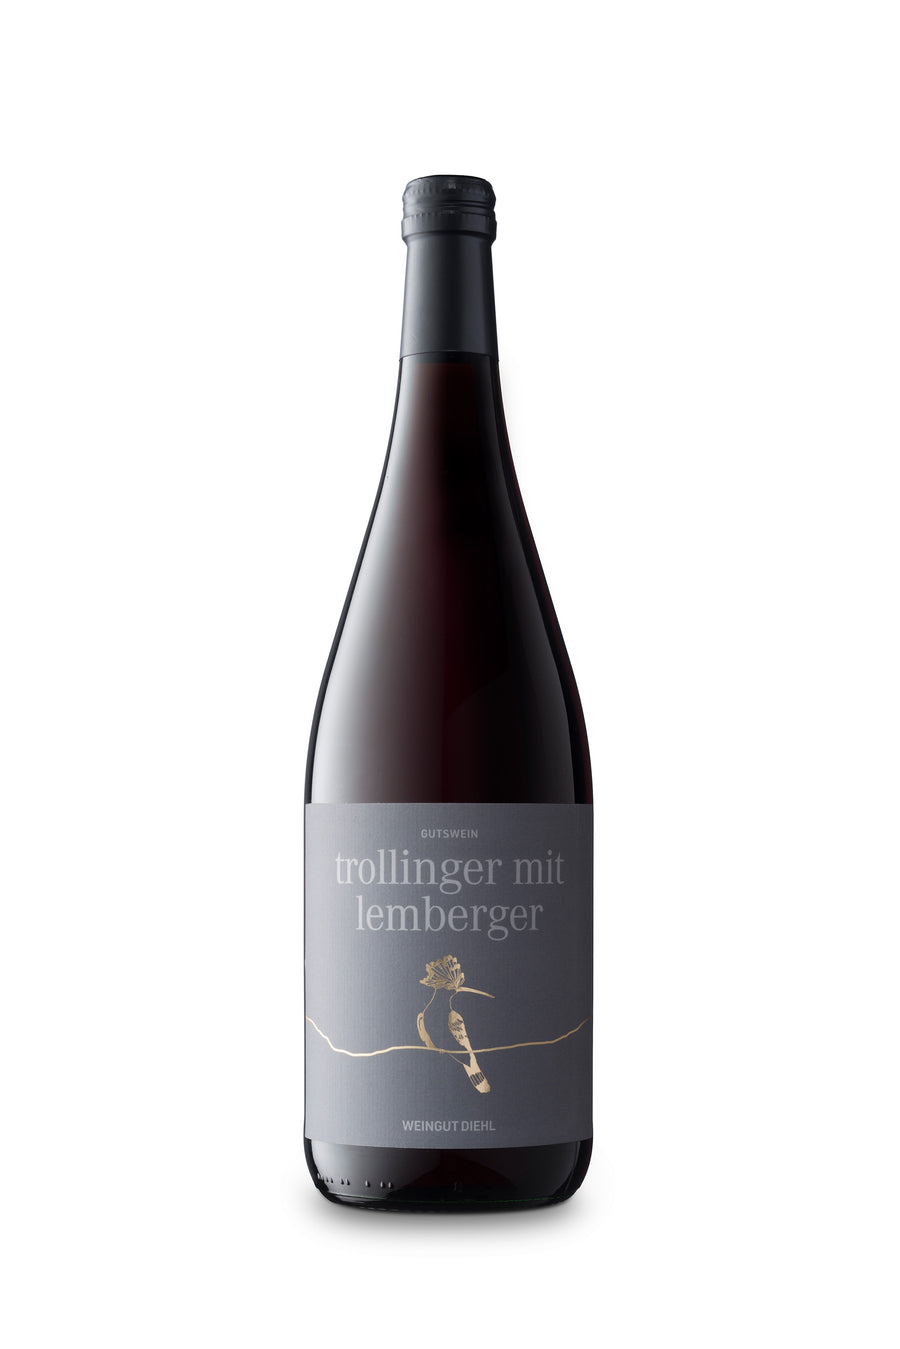 2020 Trollinger mit Lemberger – Weingut Diehl